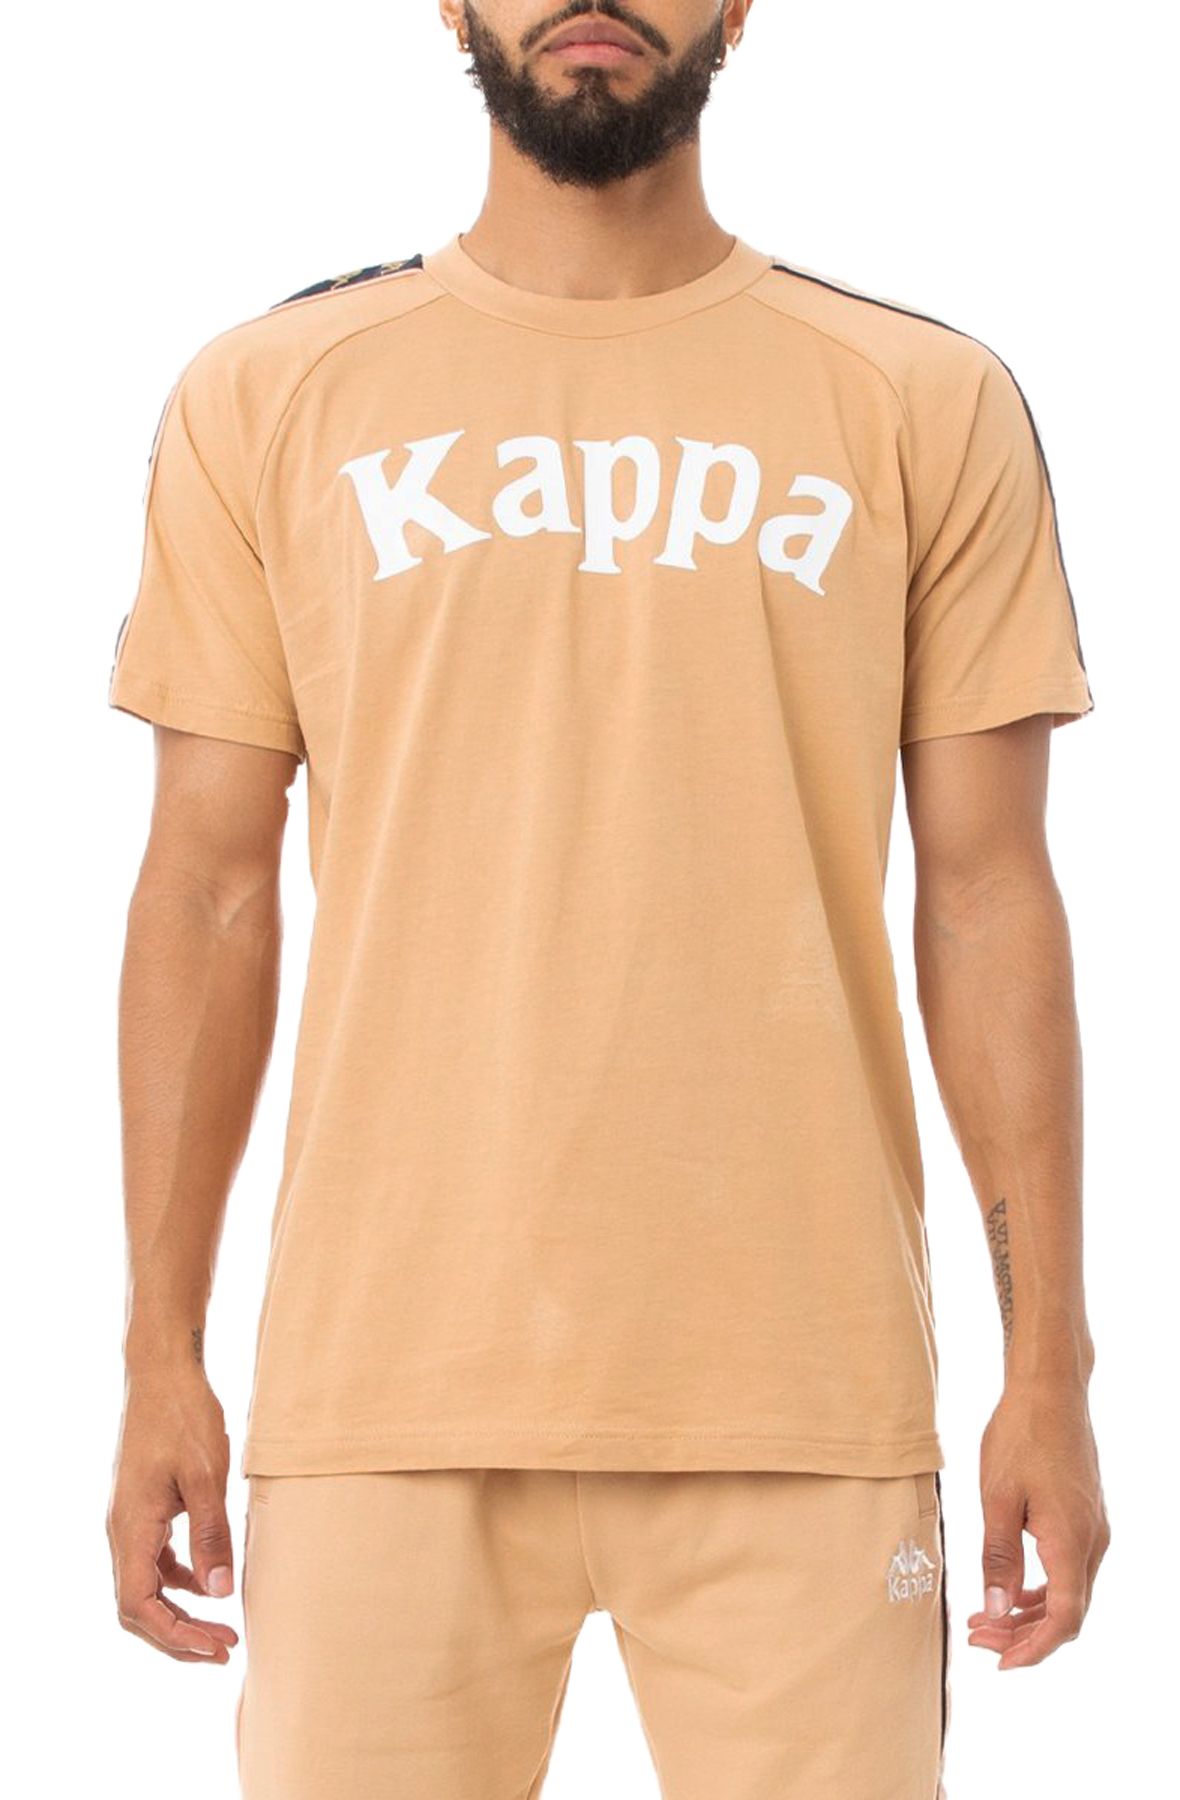 maglia maglietta T-Shirt Kappa 222 BANDA SIDONIO uomo maniche corte  Girocollo Cotone Jersey Grey Lt-Orange-Green